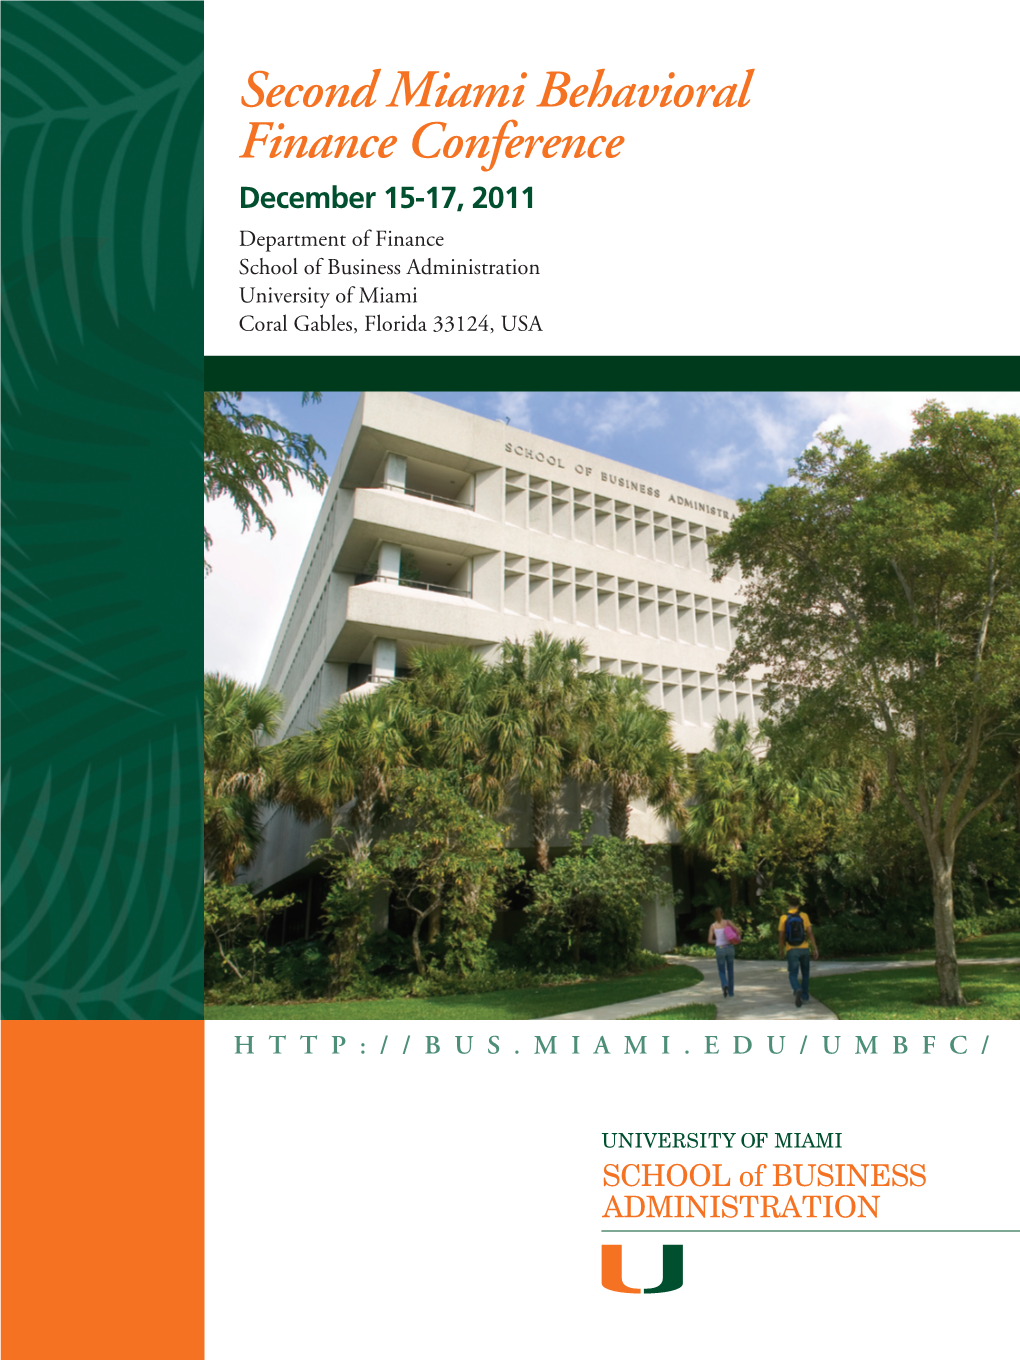 Second Miami Behavioral Finance Conference